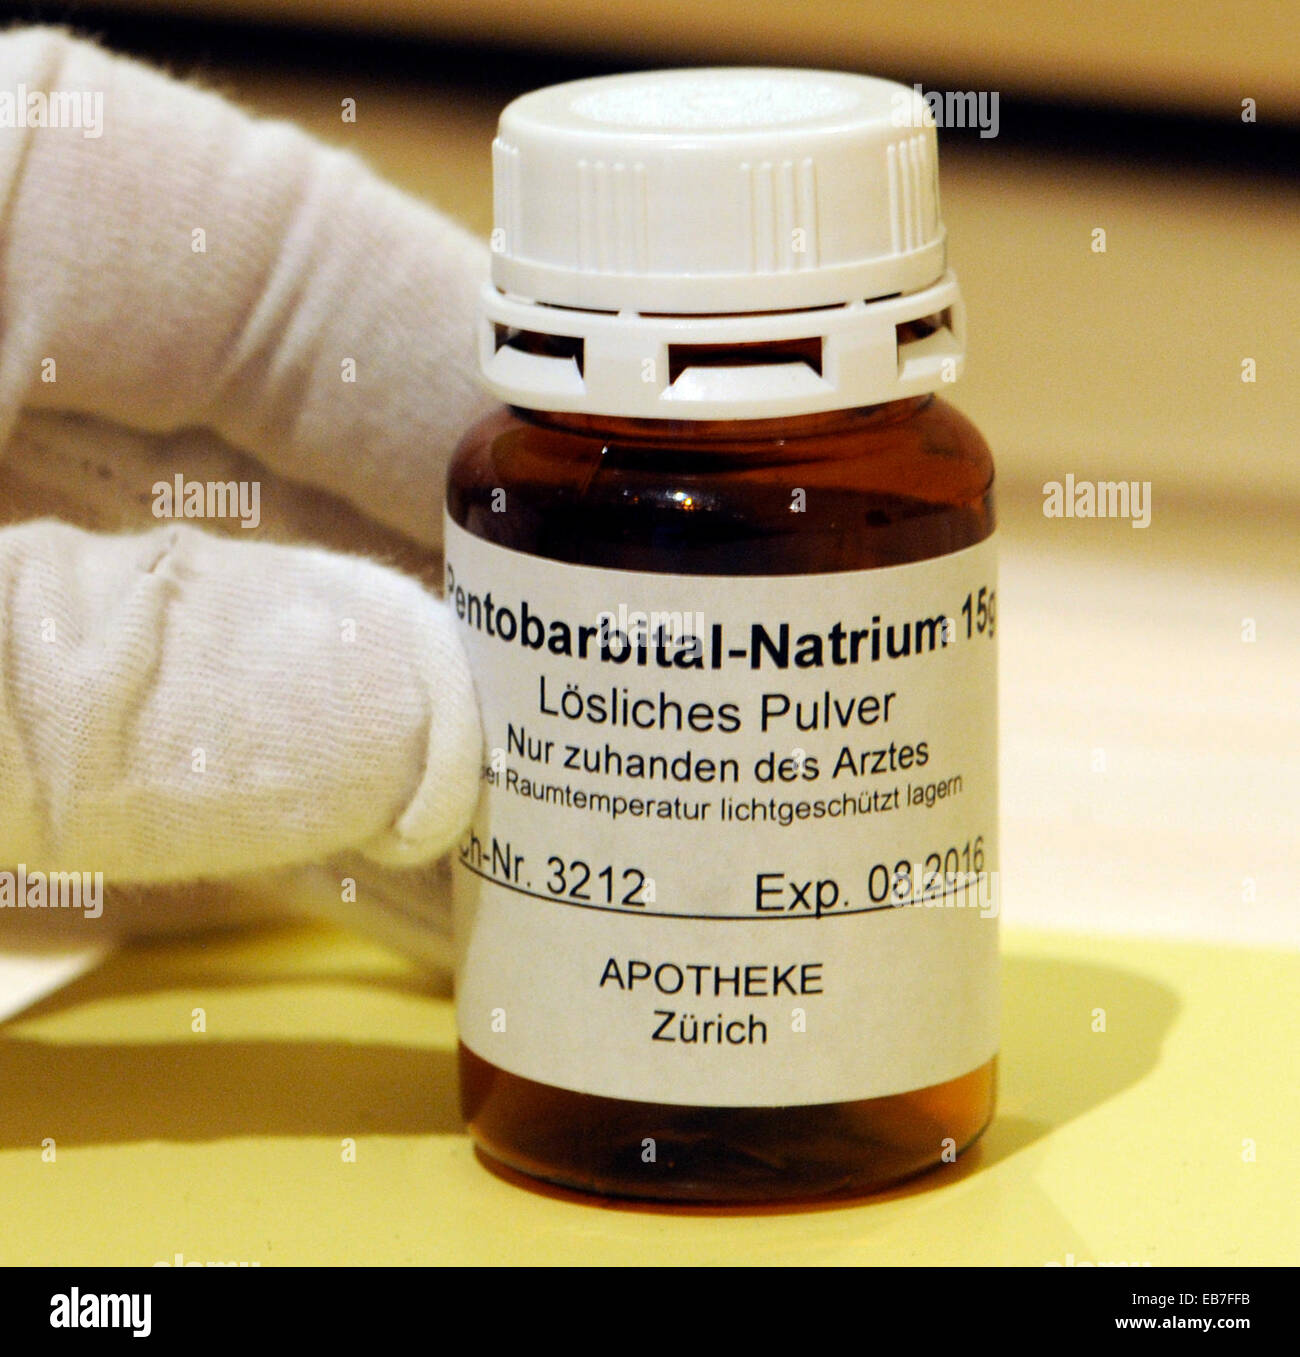 Una bottiglia con Pentobarbital-Natrium, che viene utilizzato in Svizzera per suicidio, visto in Freiburg in città-museo, 26 aprile 2012. Foto Stock